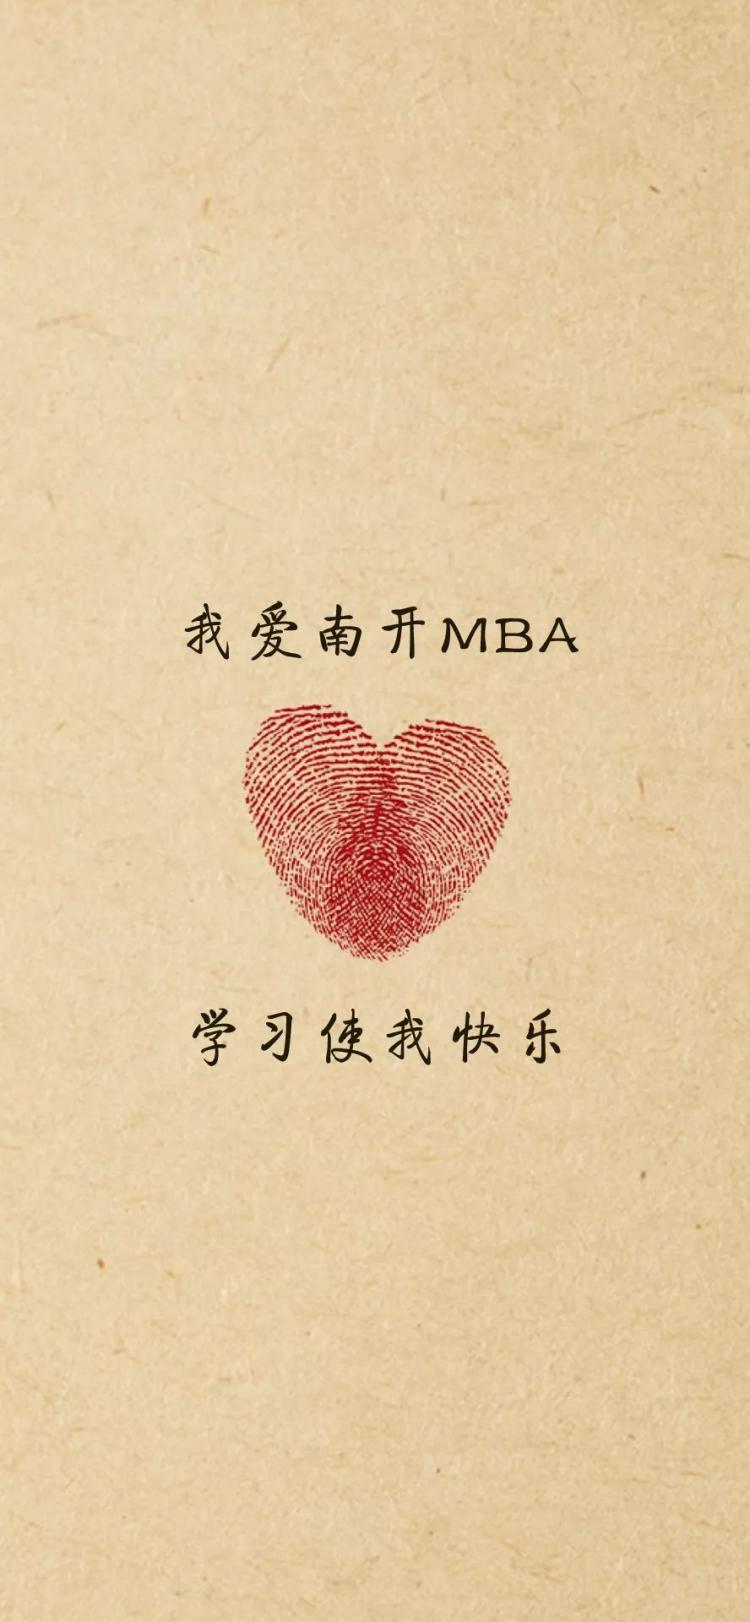 南开mba专用壁纸,一波带走 南开大学校友会 mba中国网